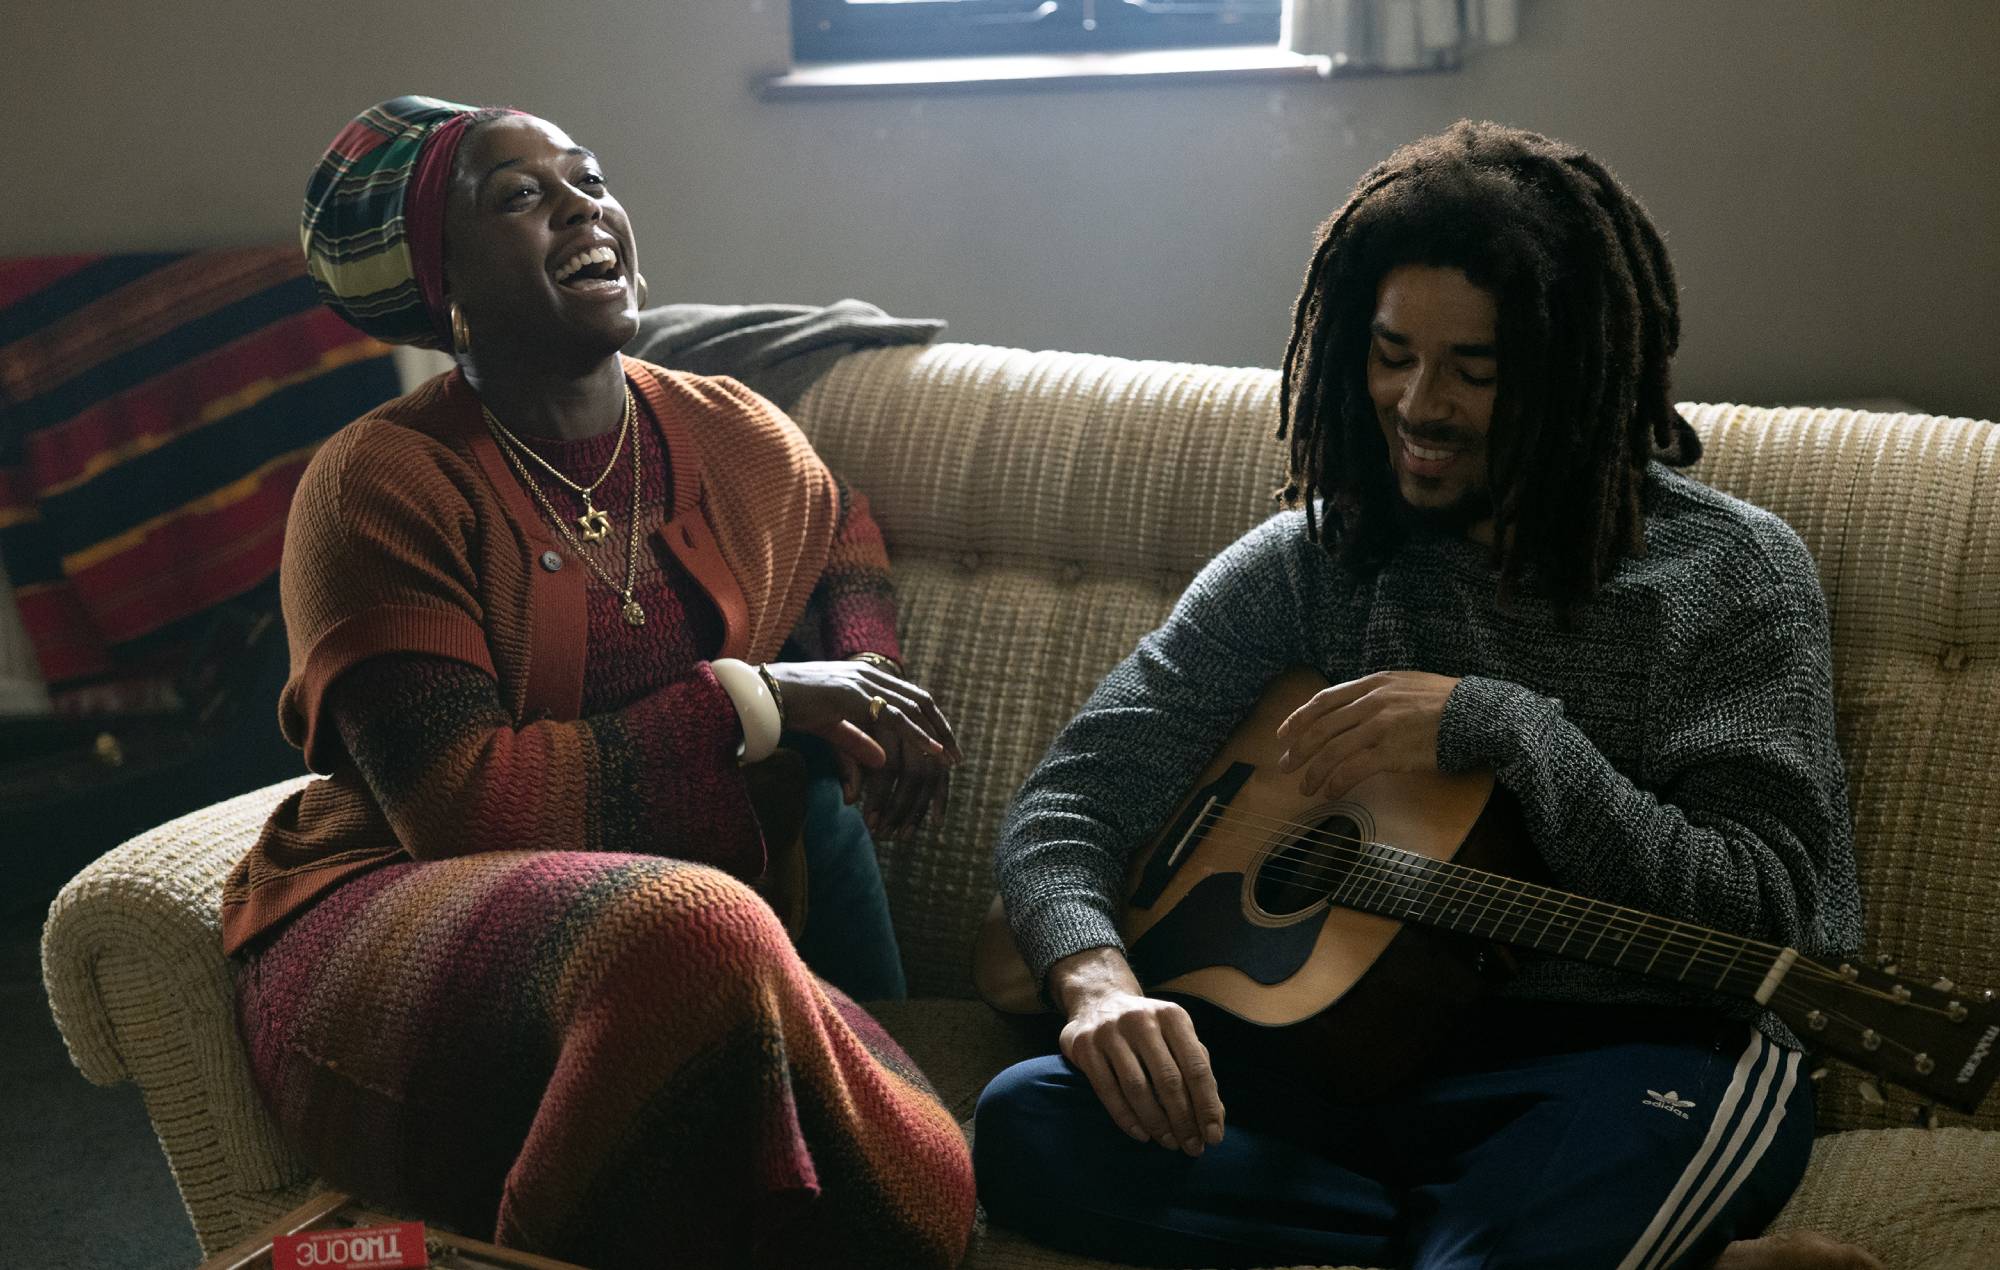 ¿Qué fue de Rita Marley después de 'Bob Marley: One Love'?